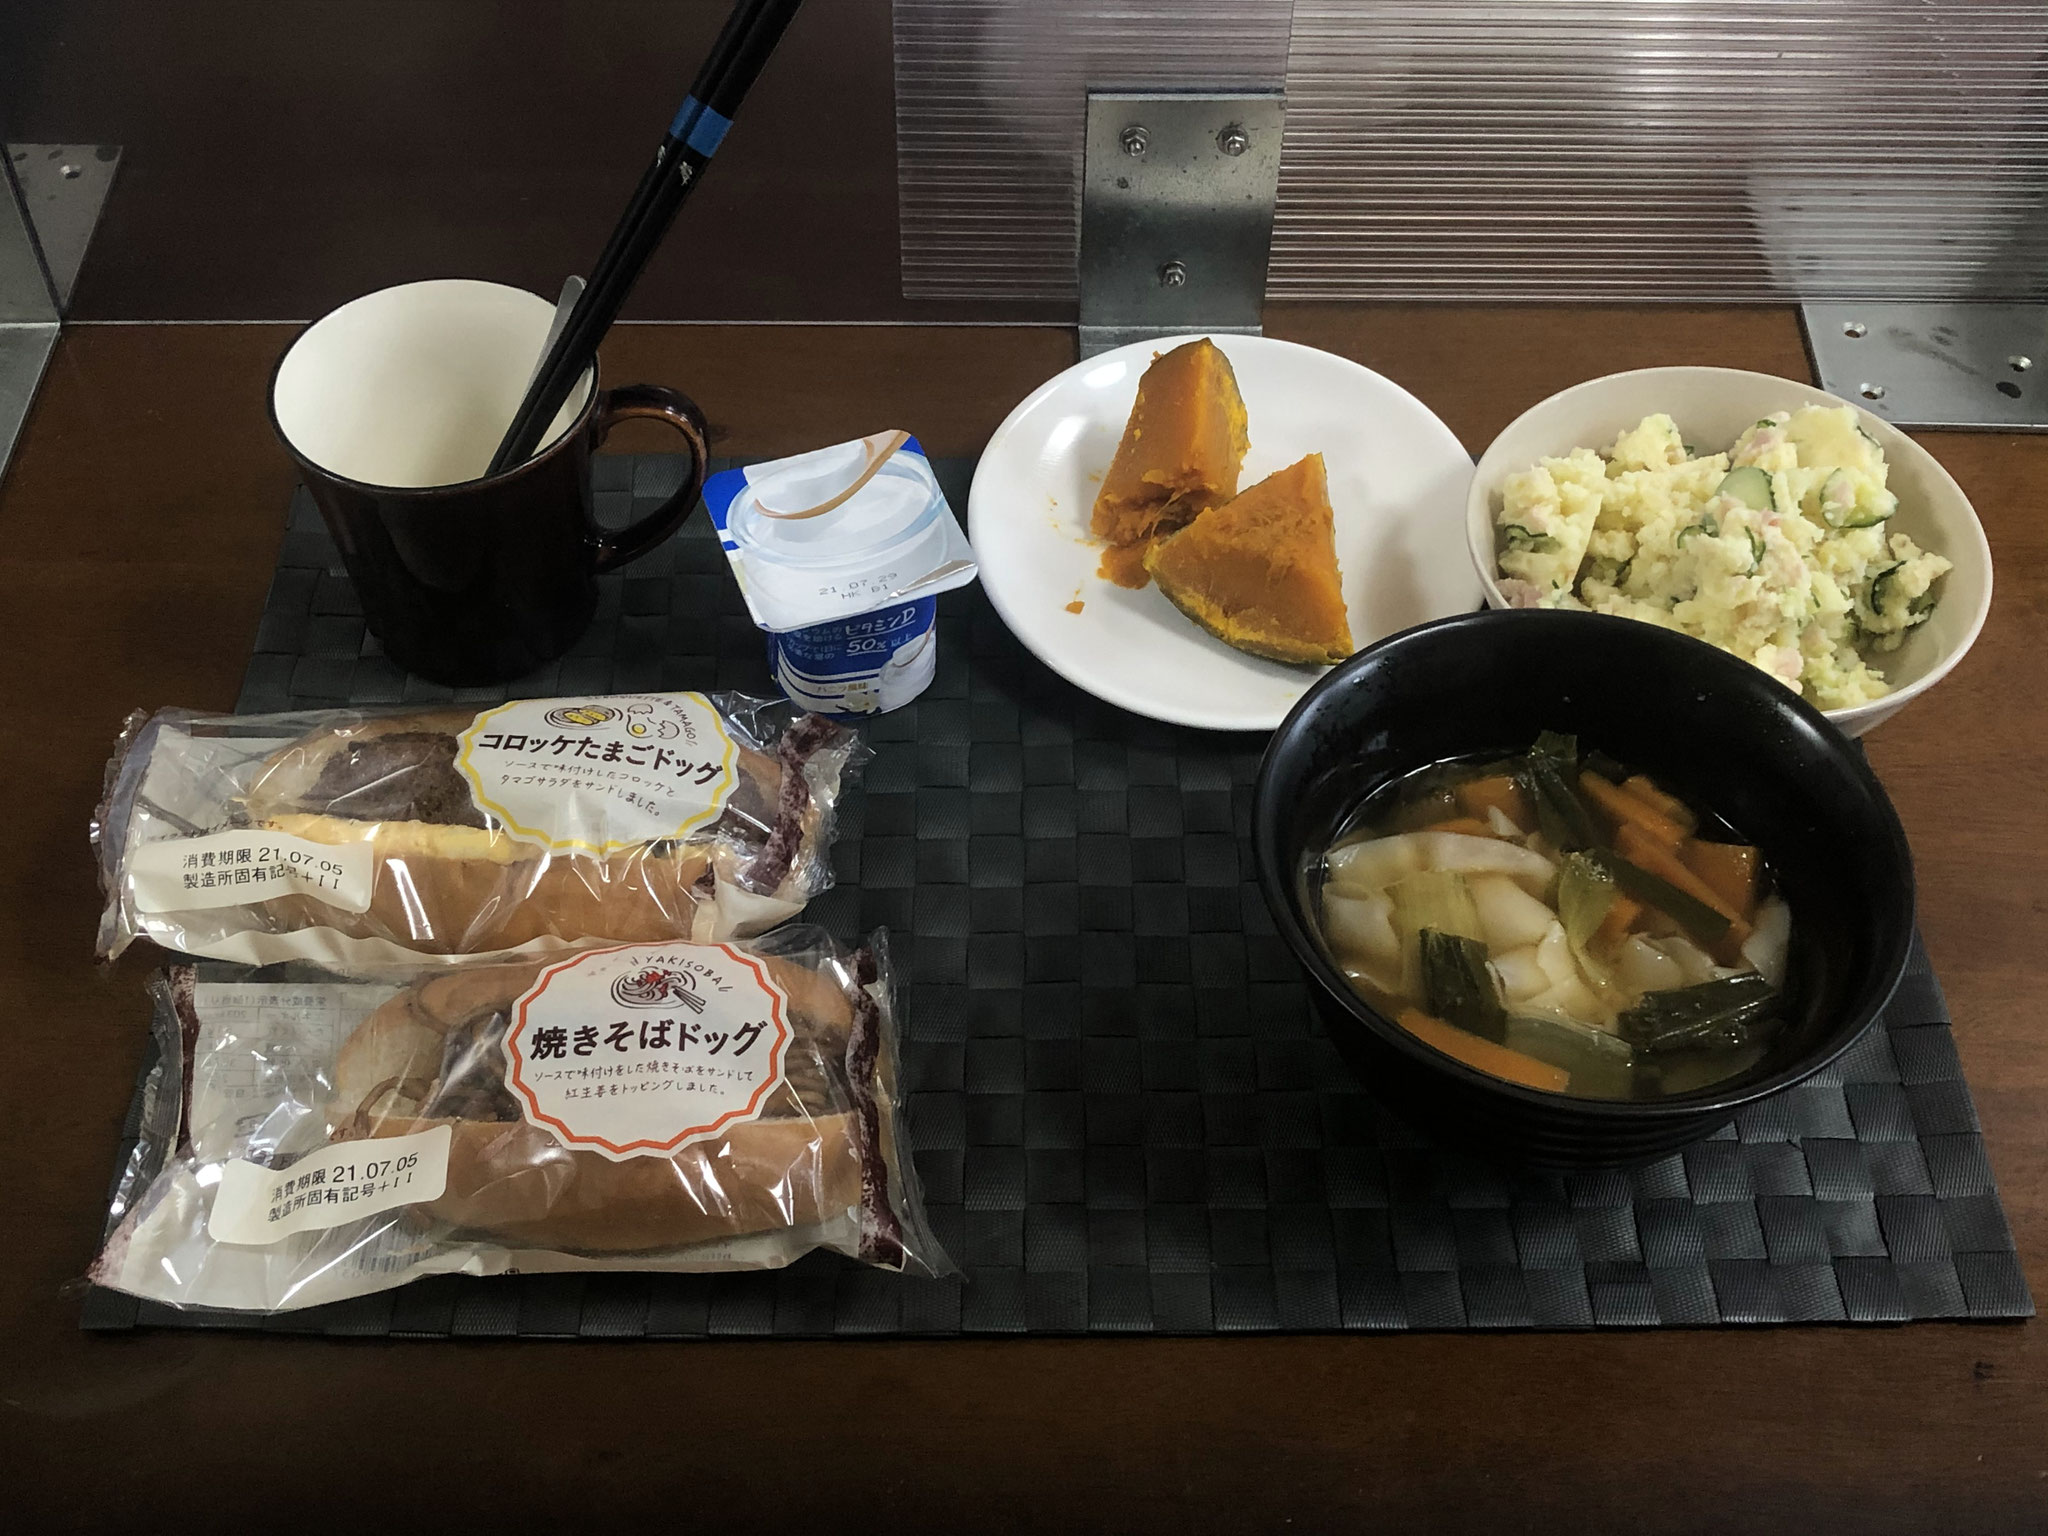 7月4日日曜日、Ohana朝食「ポテトサラダ、野菜入りワンタンスープ、かぼちゃの甘煮、総菜パン2個、ヨーグルト」